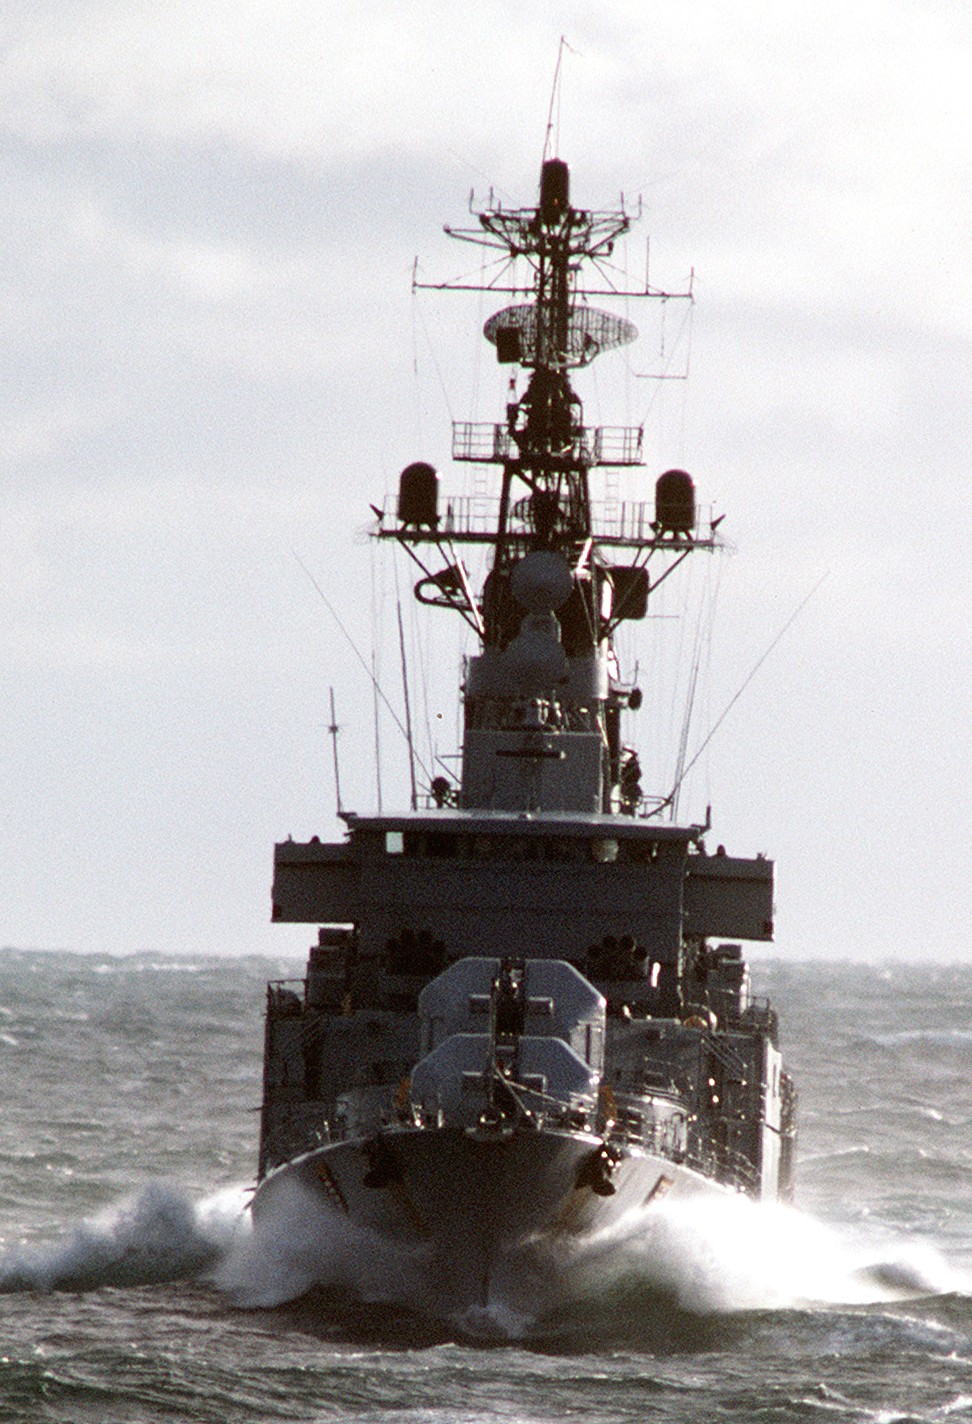 d-182 fgs schleswig-holstein type 101a hamburg class destroyer german navy 17